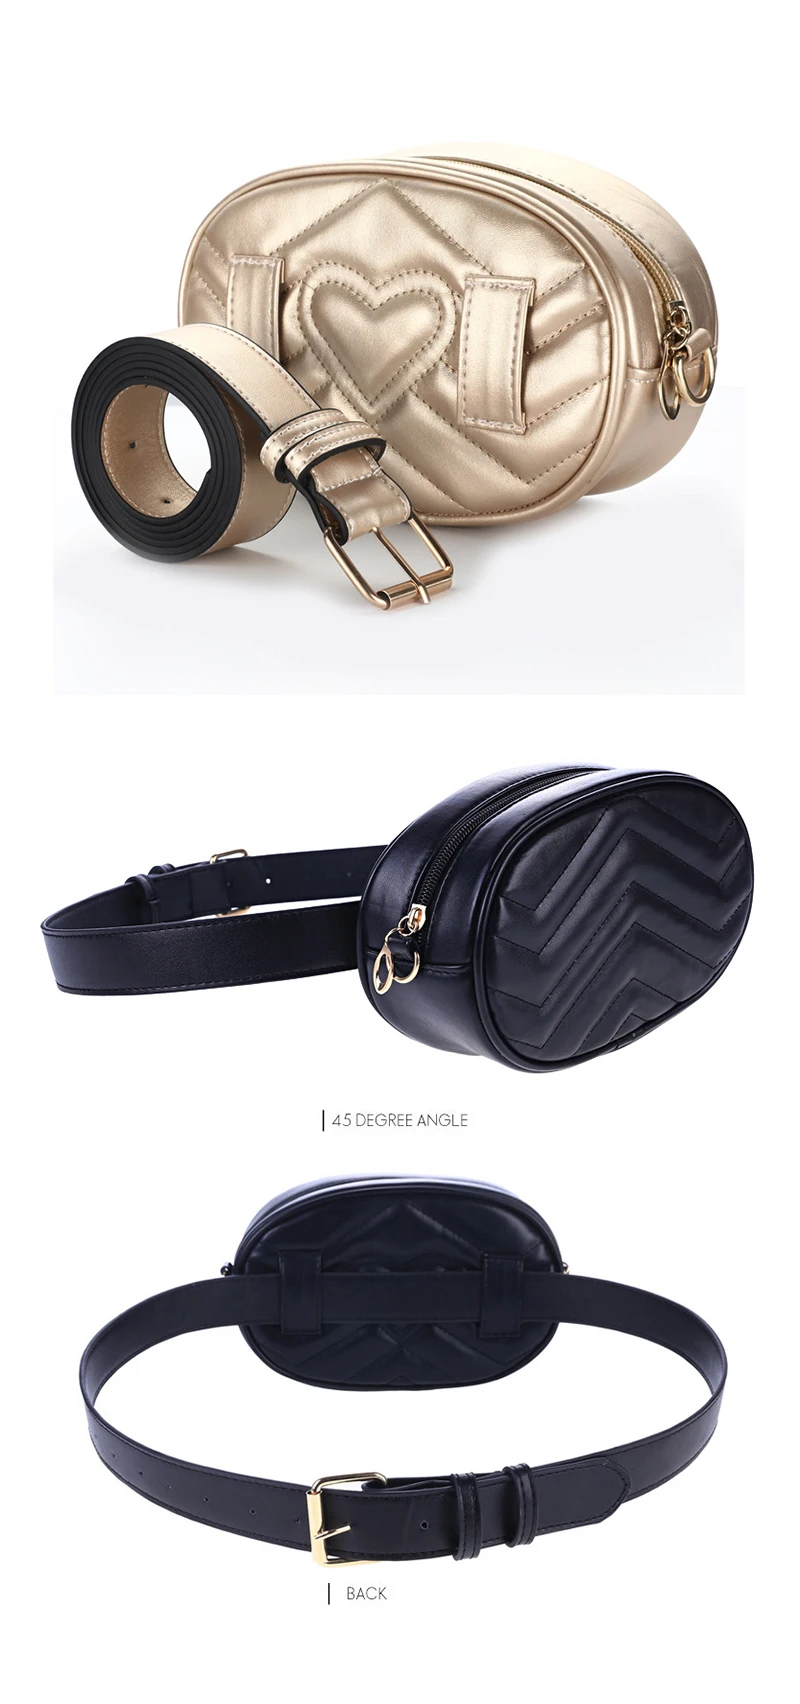 QEHIIE 2018 модная поясная сумка для женщин Дизайнерская кожаная мини сумка Корейский Роскошный мобильный телефон поясная сумка Бесплатная